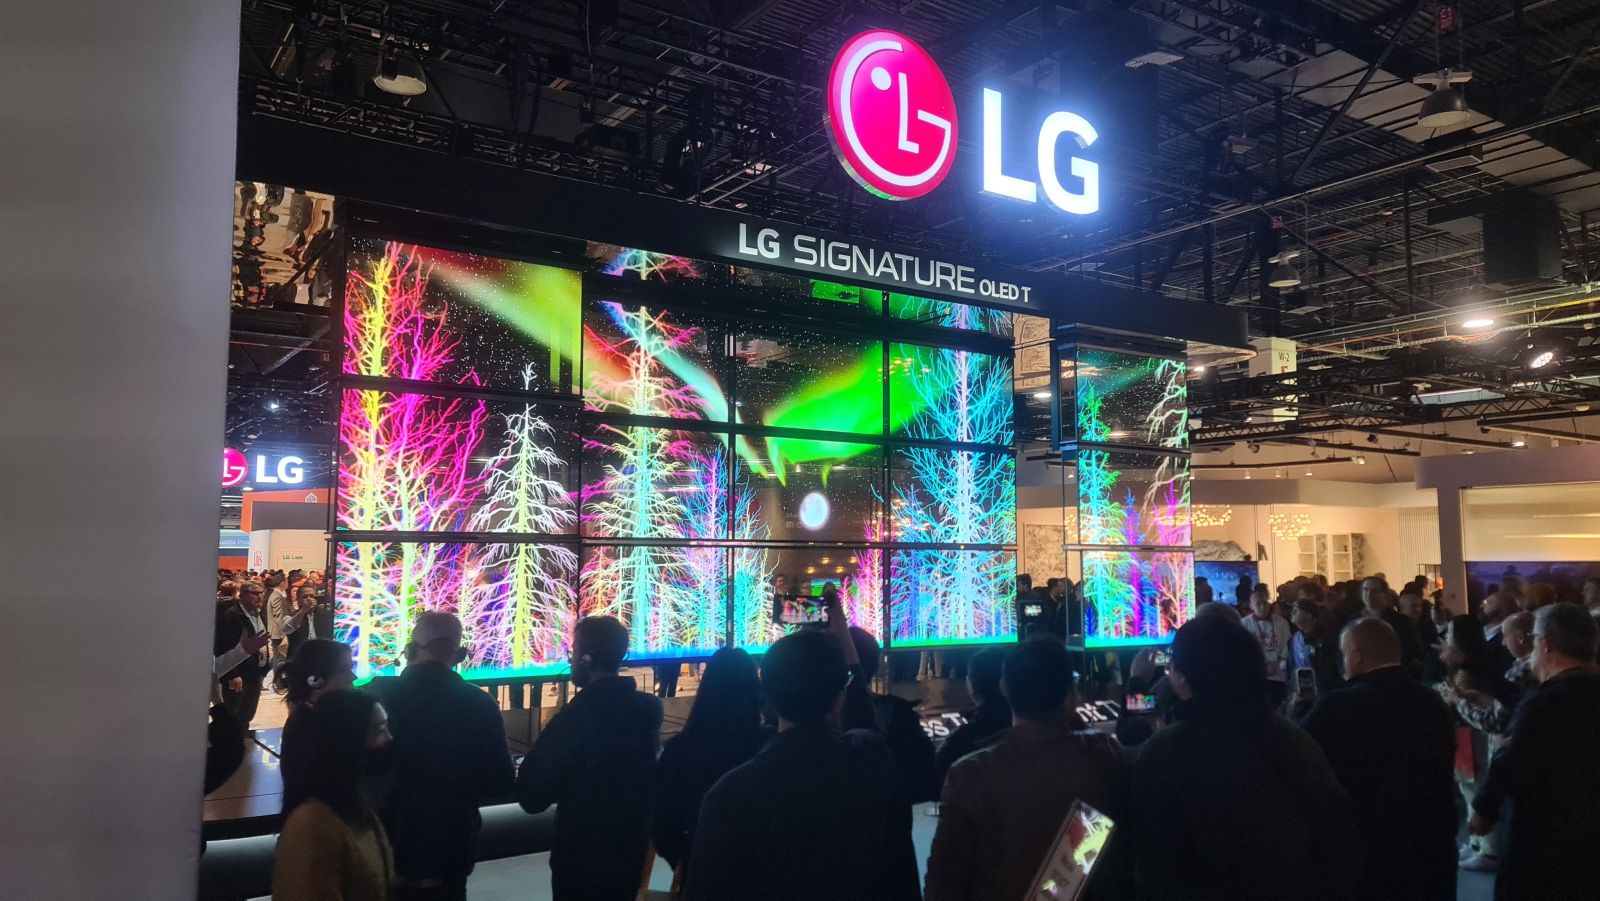 LG Signature OLED T-Displays